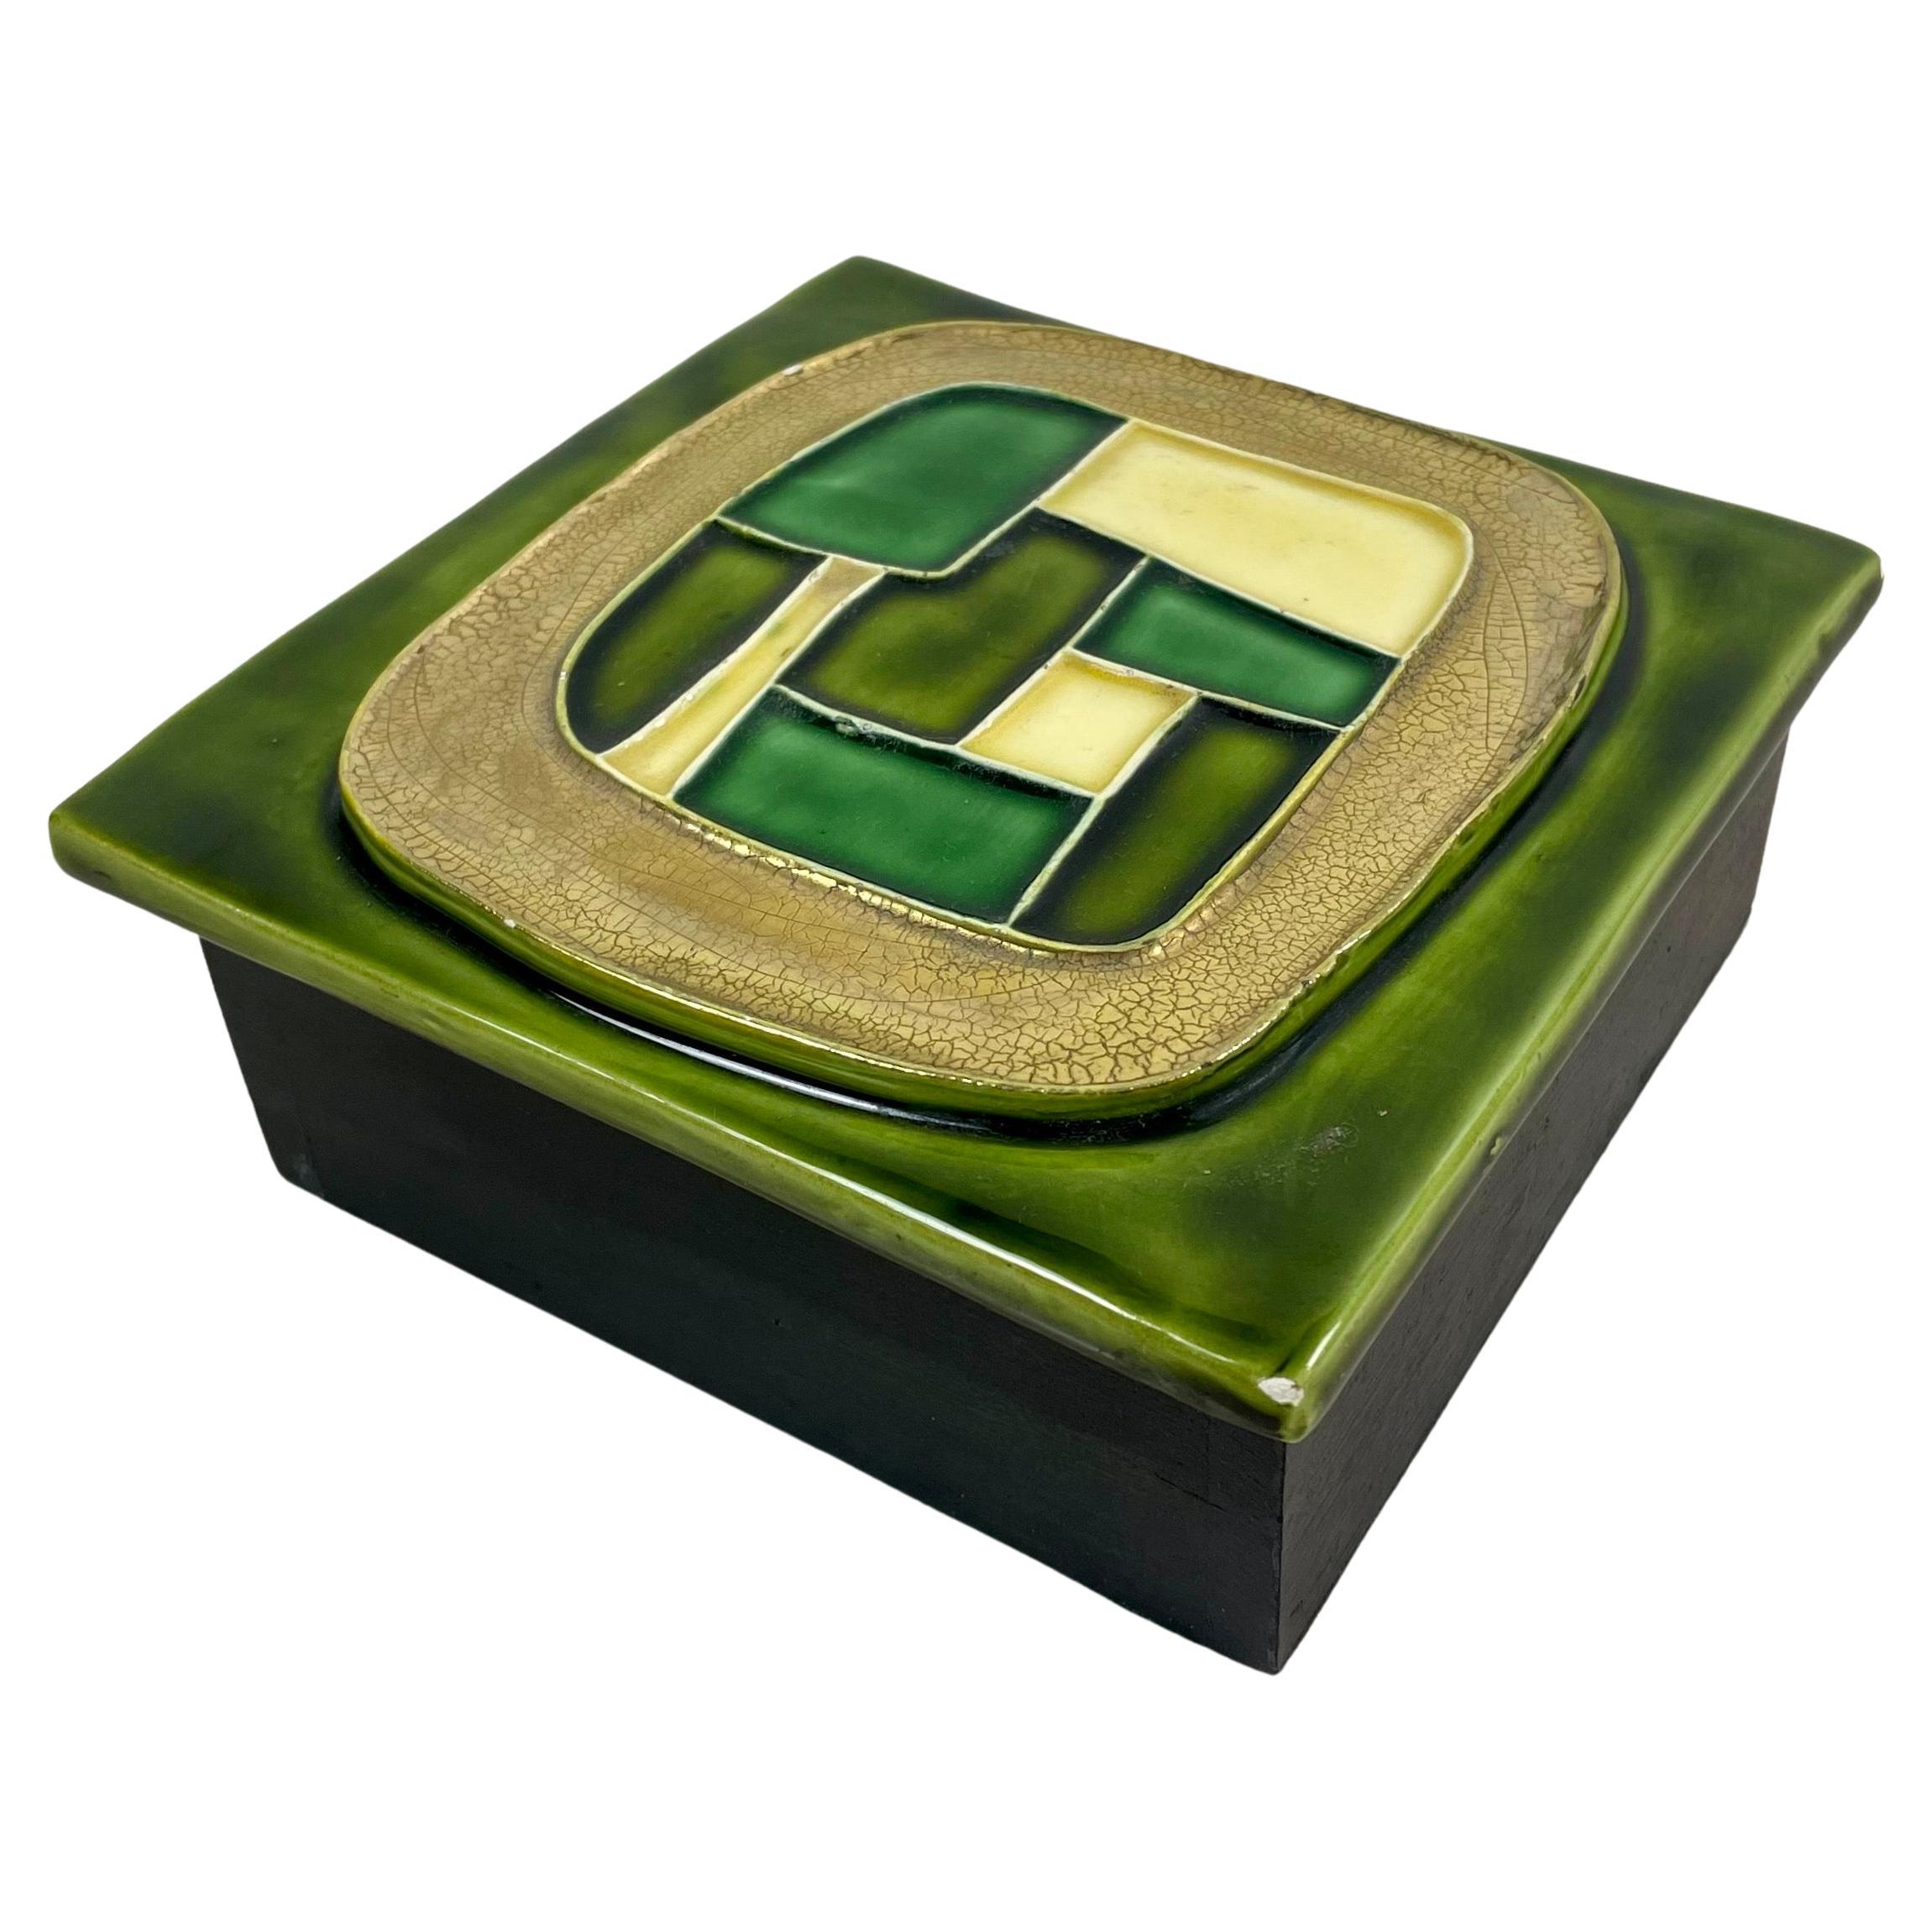 Boîte à secrets, boîte à bijoux, boîte de rangement, rangement rectangulaire avec couvercle en céramique émaillée dans les tons de vert et base en bois, par Mithé Espelt.
La boîte est décorée de formes géométriques. Cette boîte donne un résultat